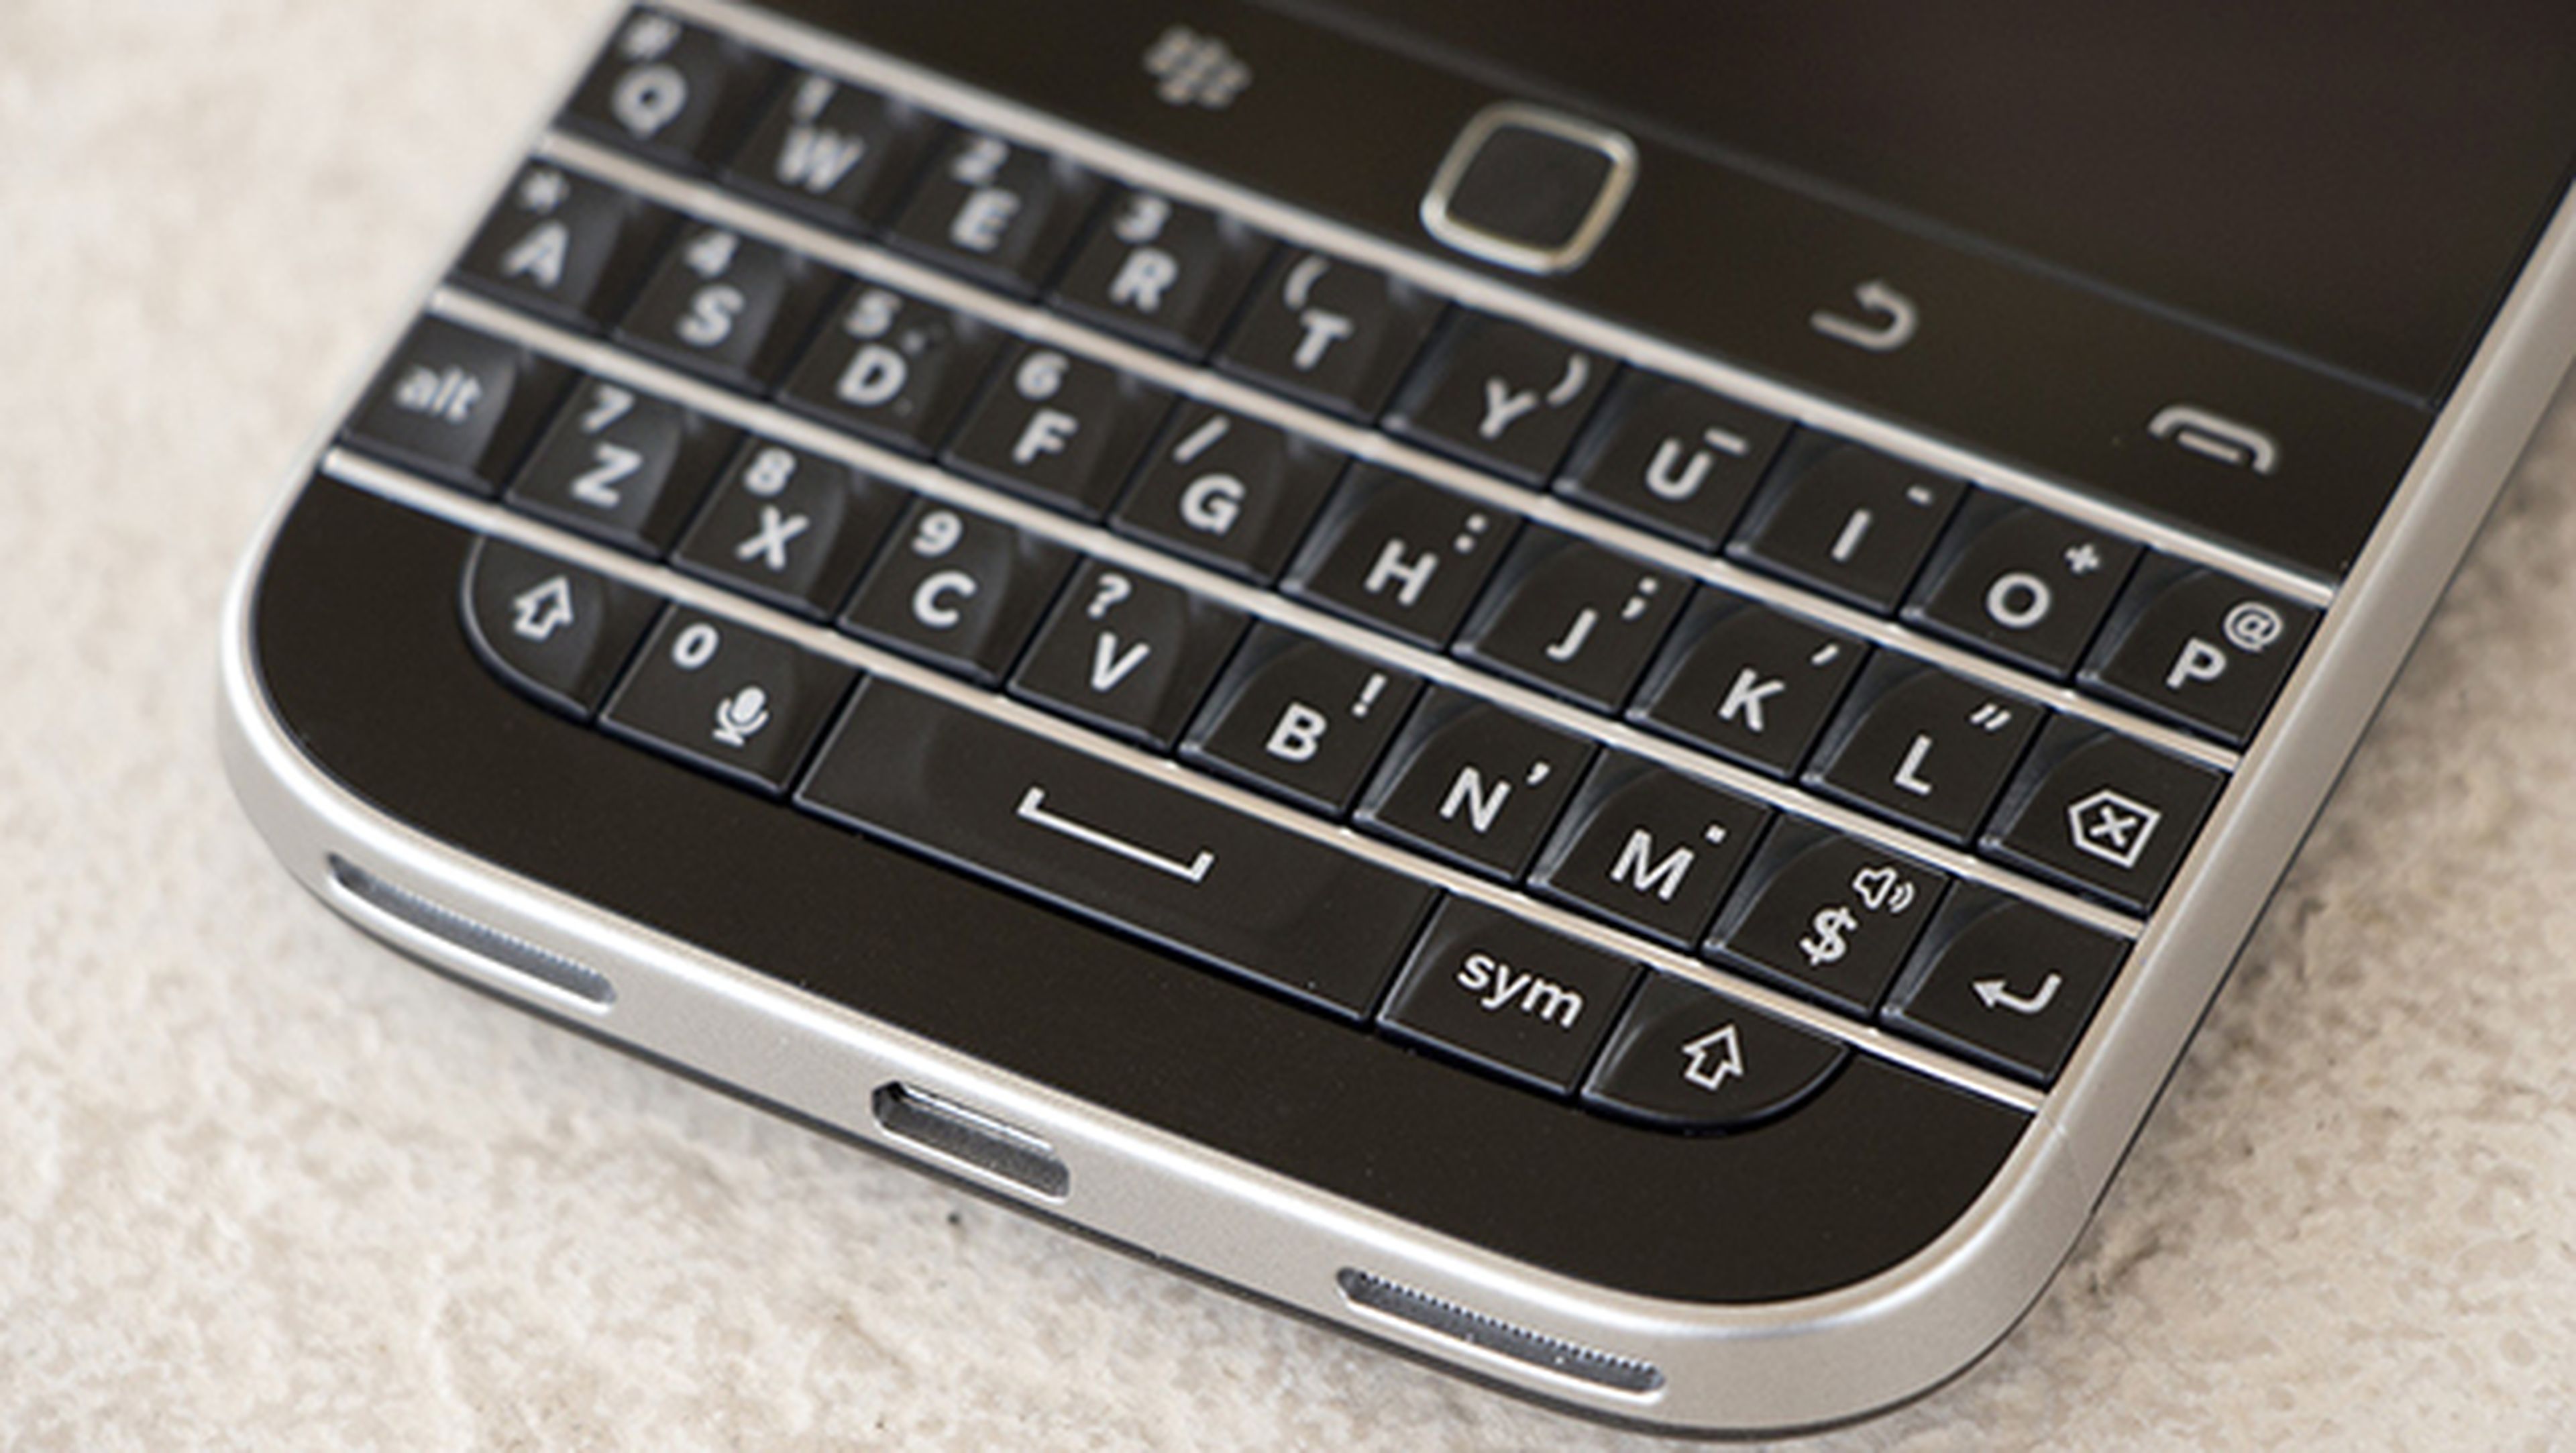 Nuevo Blackberry con teclado físico